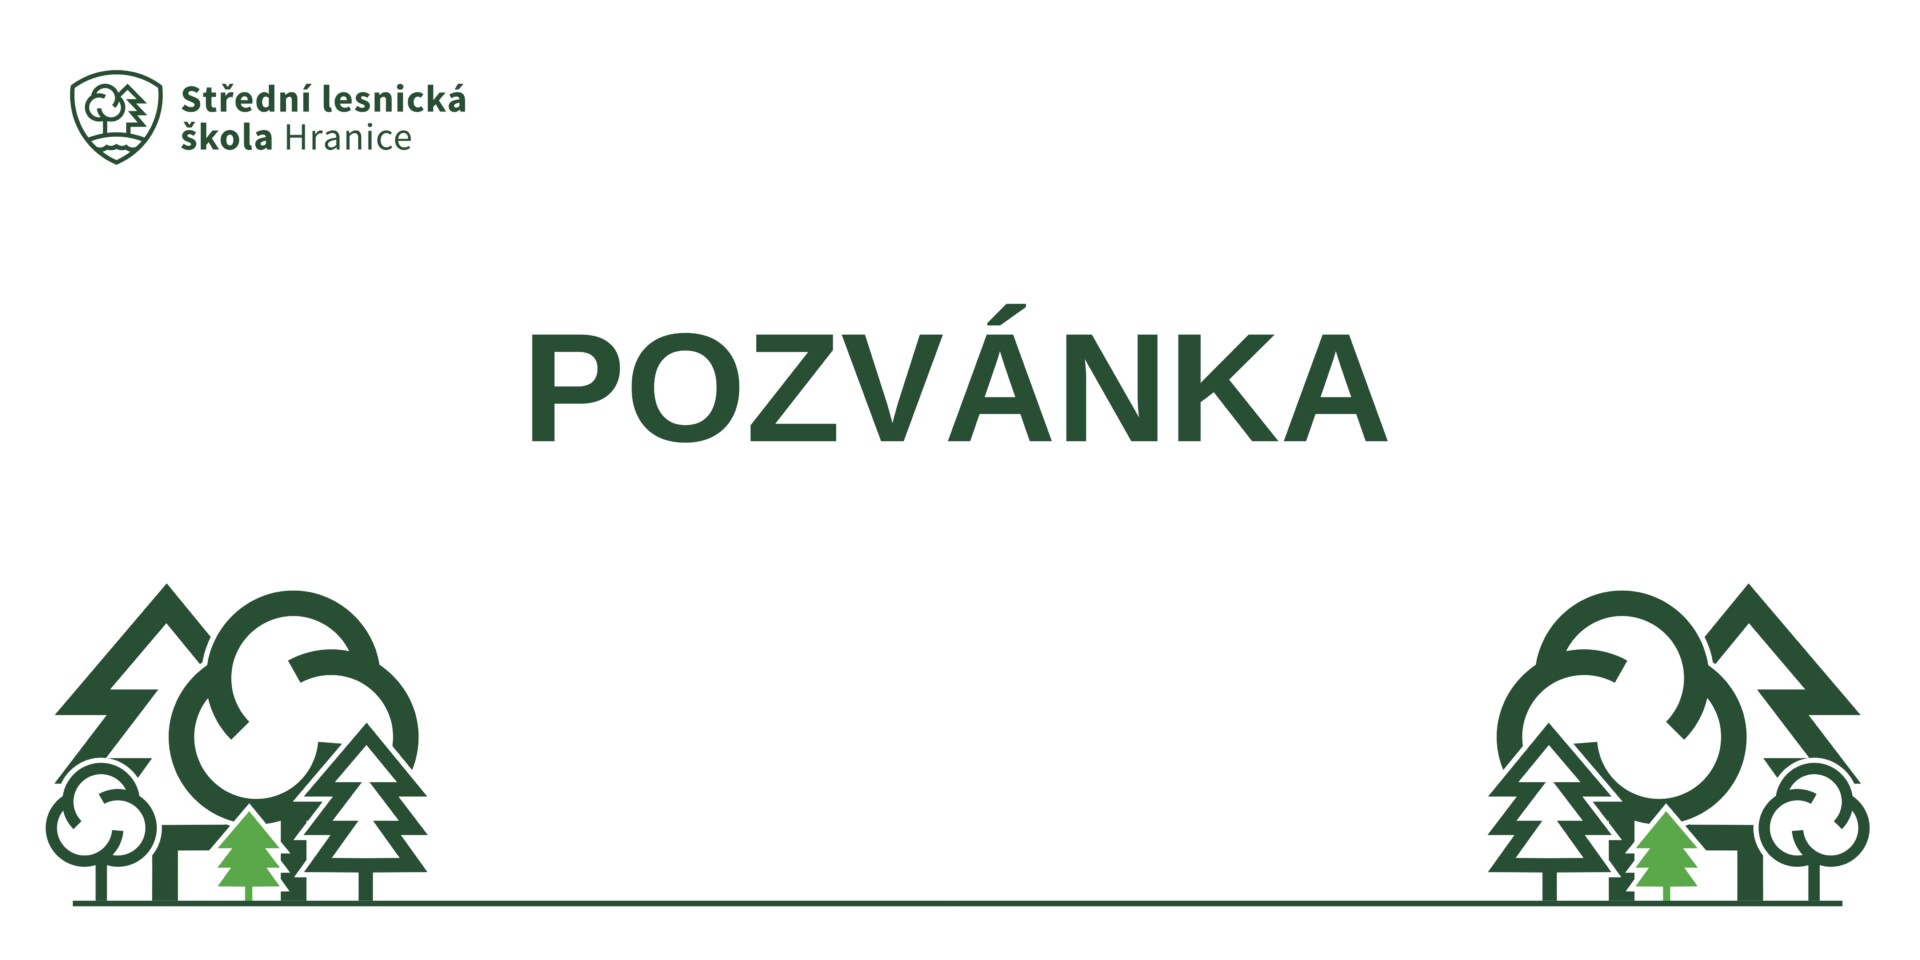 Featured image for “Pozvánka na slavnostní vyřazení”